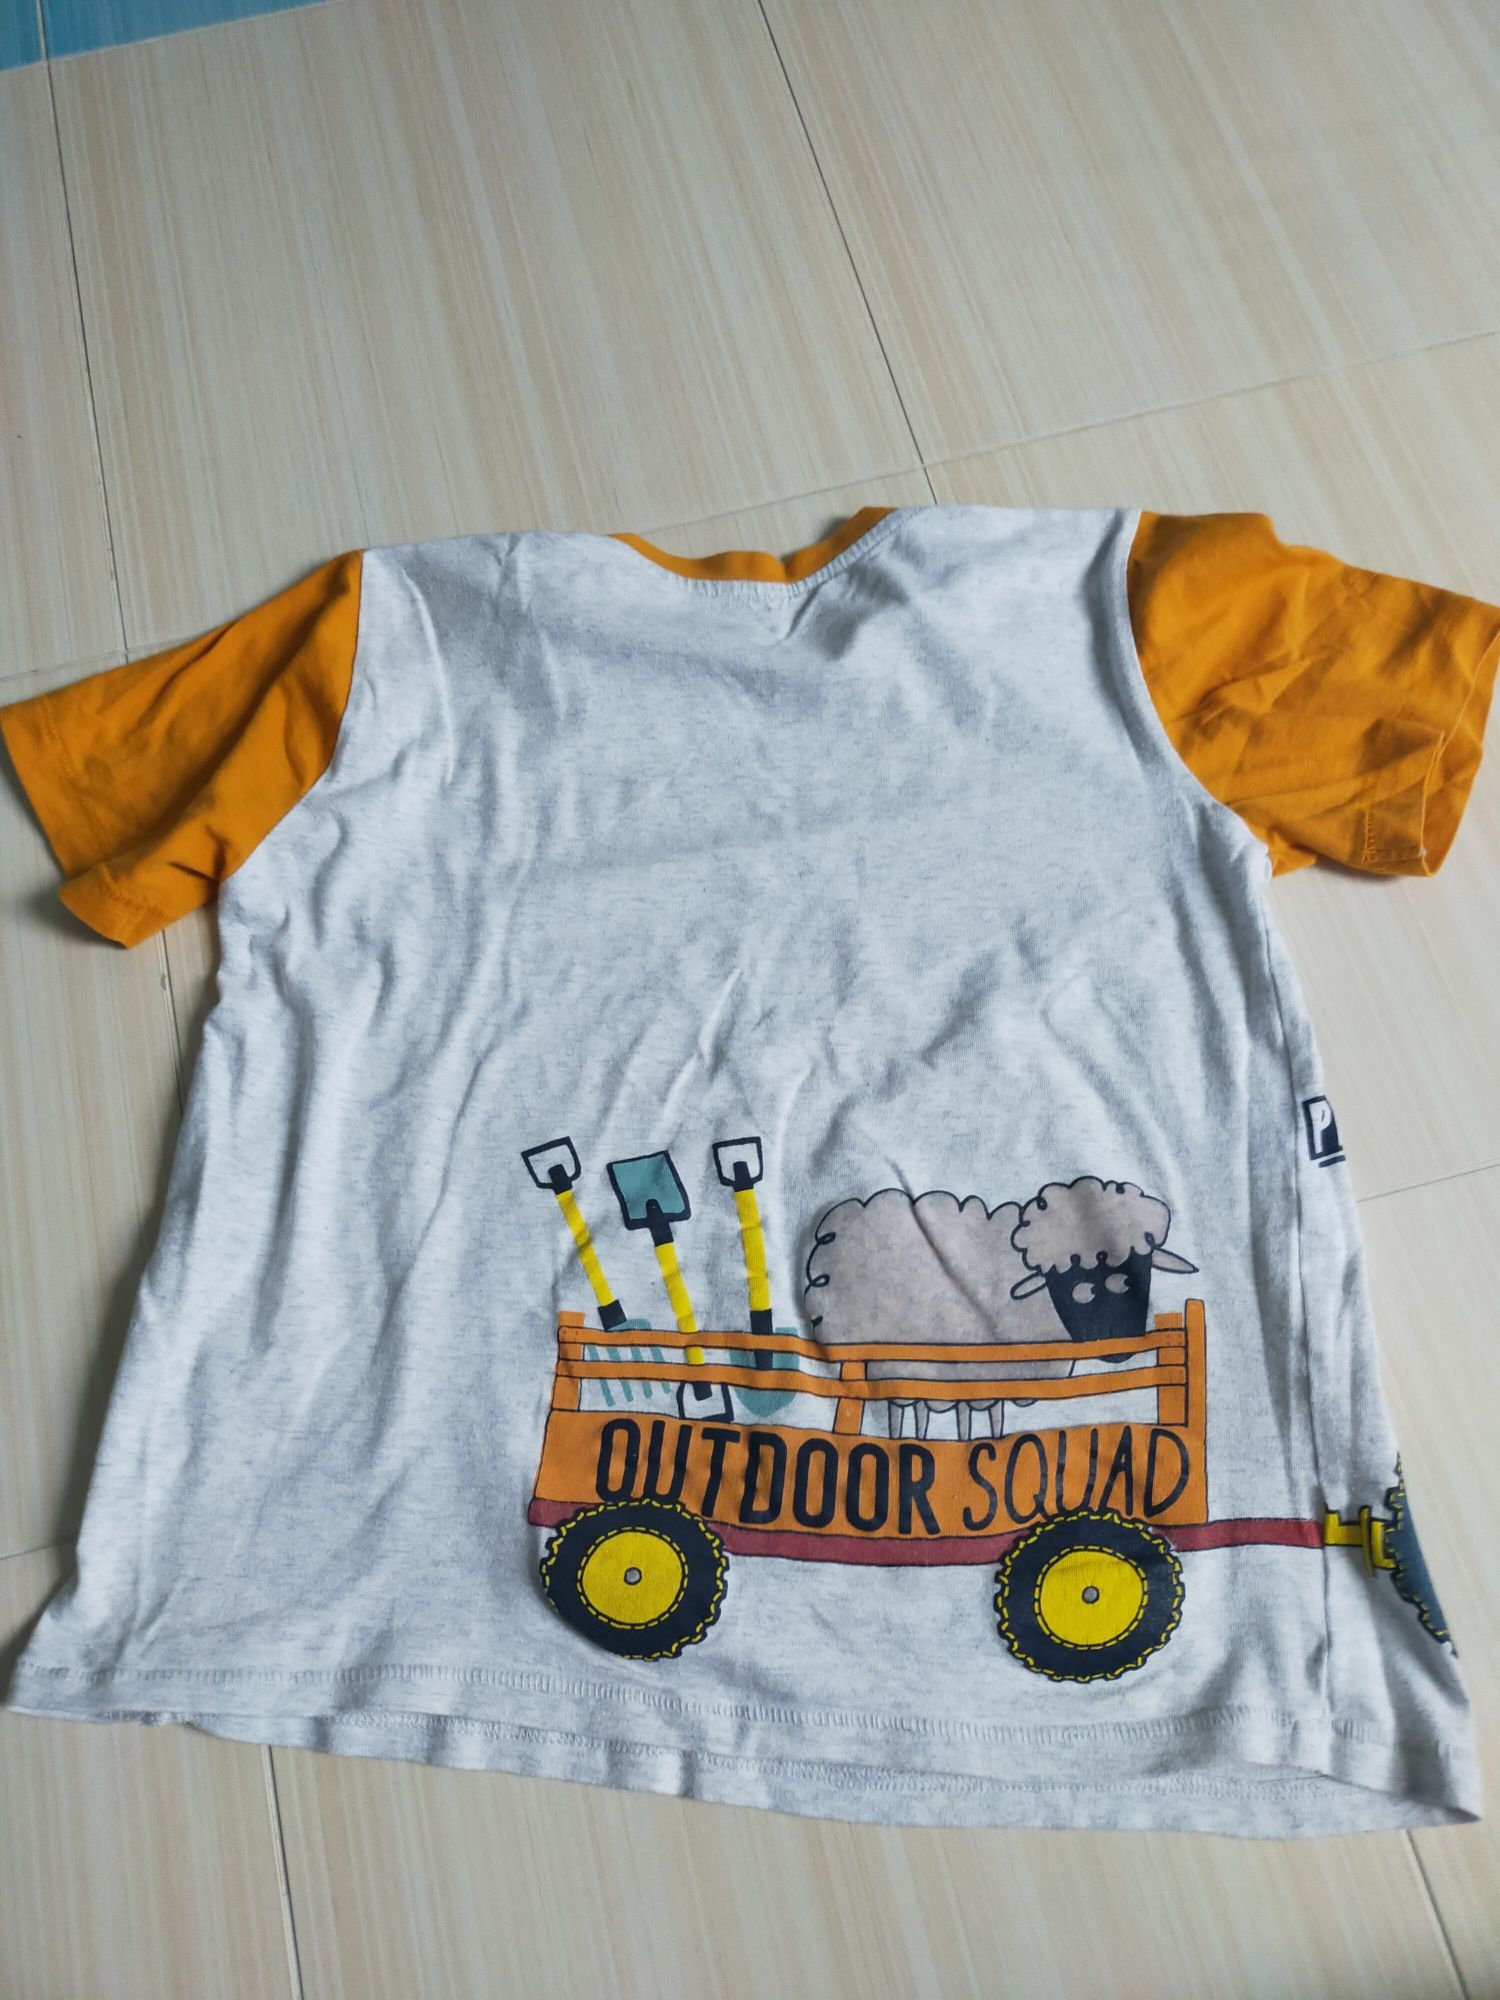 T-shirt z traktorem roz 128